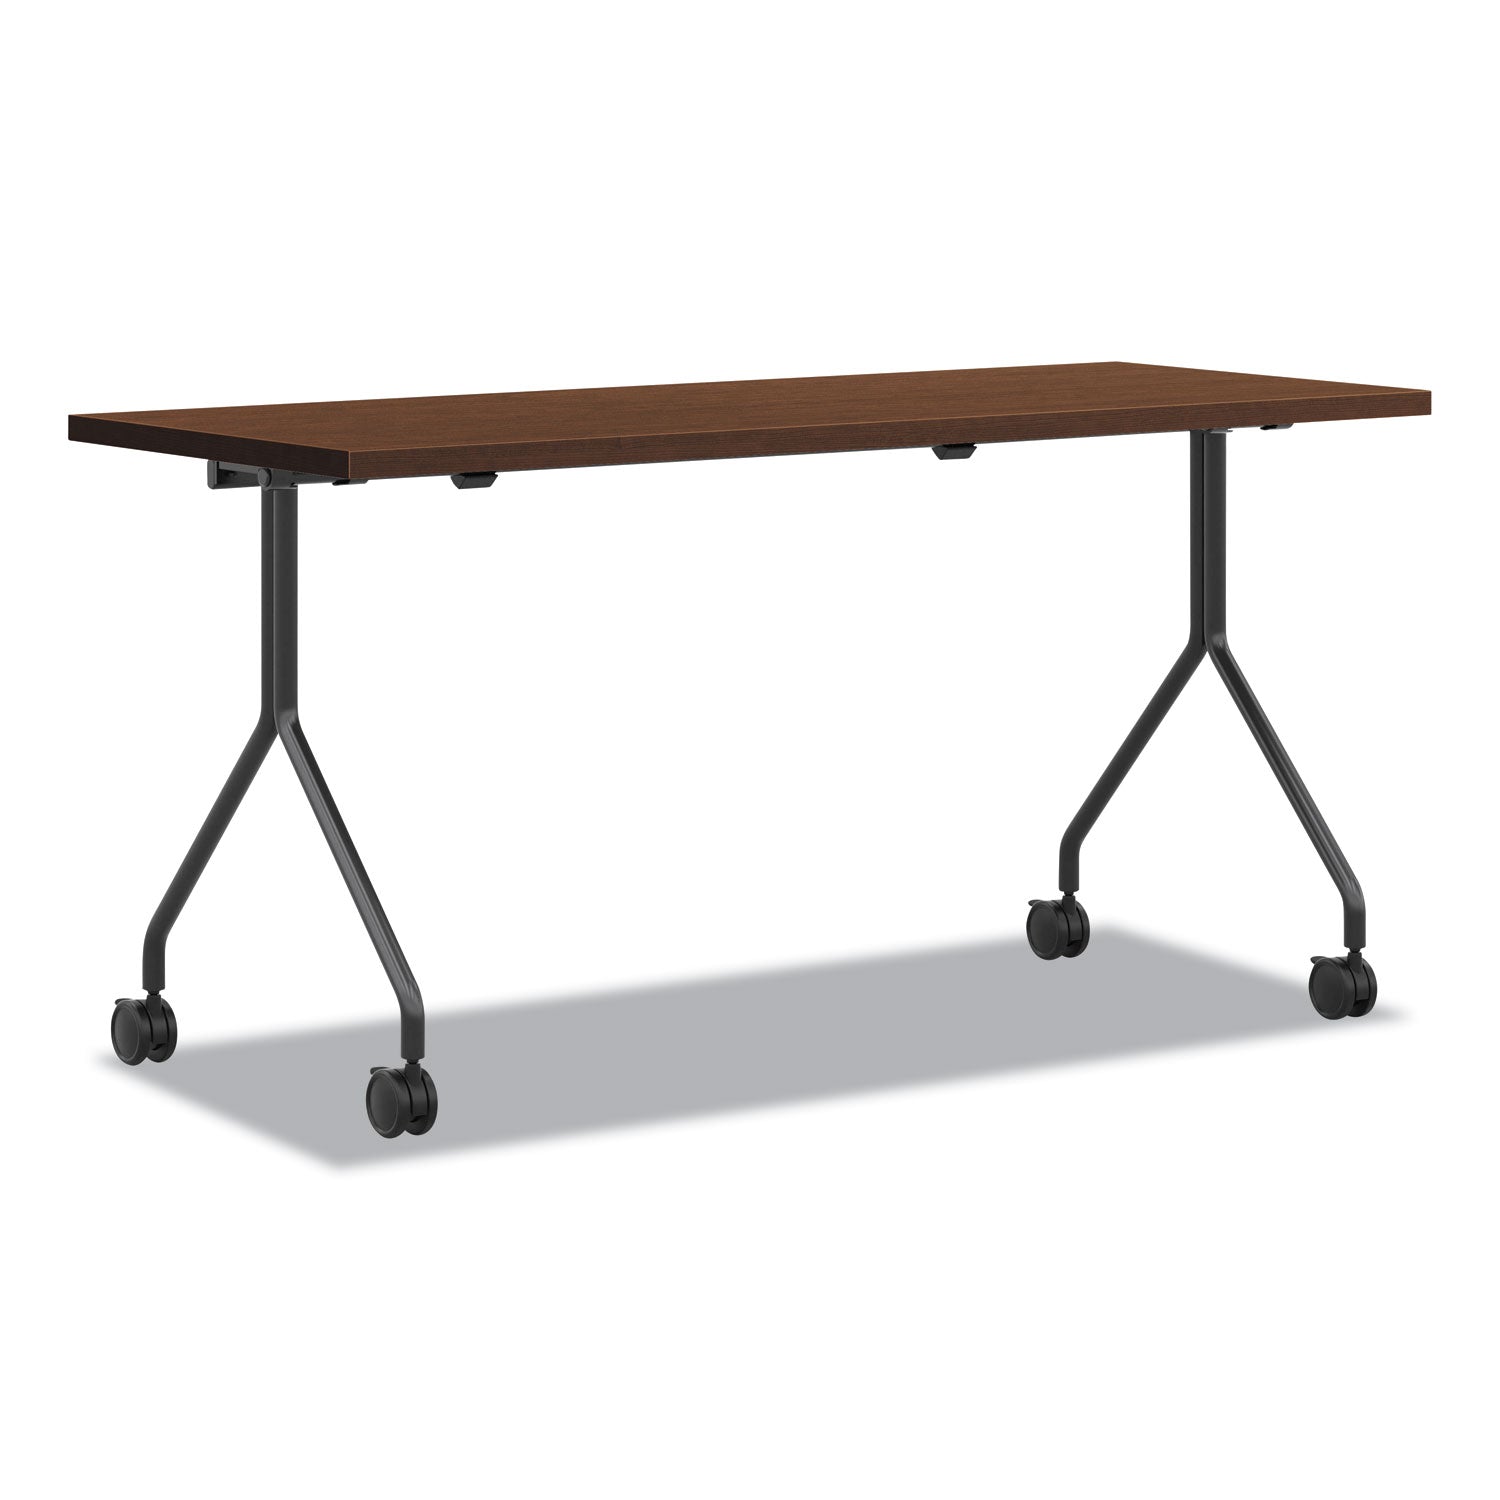 between-nested-multipurpose-tables-rectangular-72-x-30-shaker-cherry_honpt3072nsff - 1